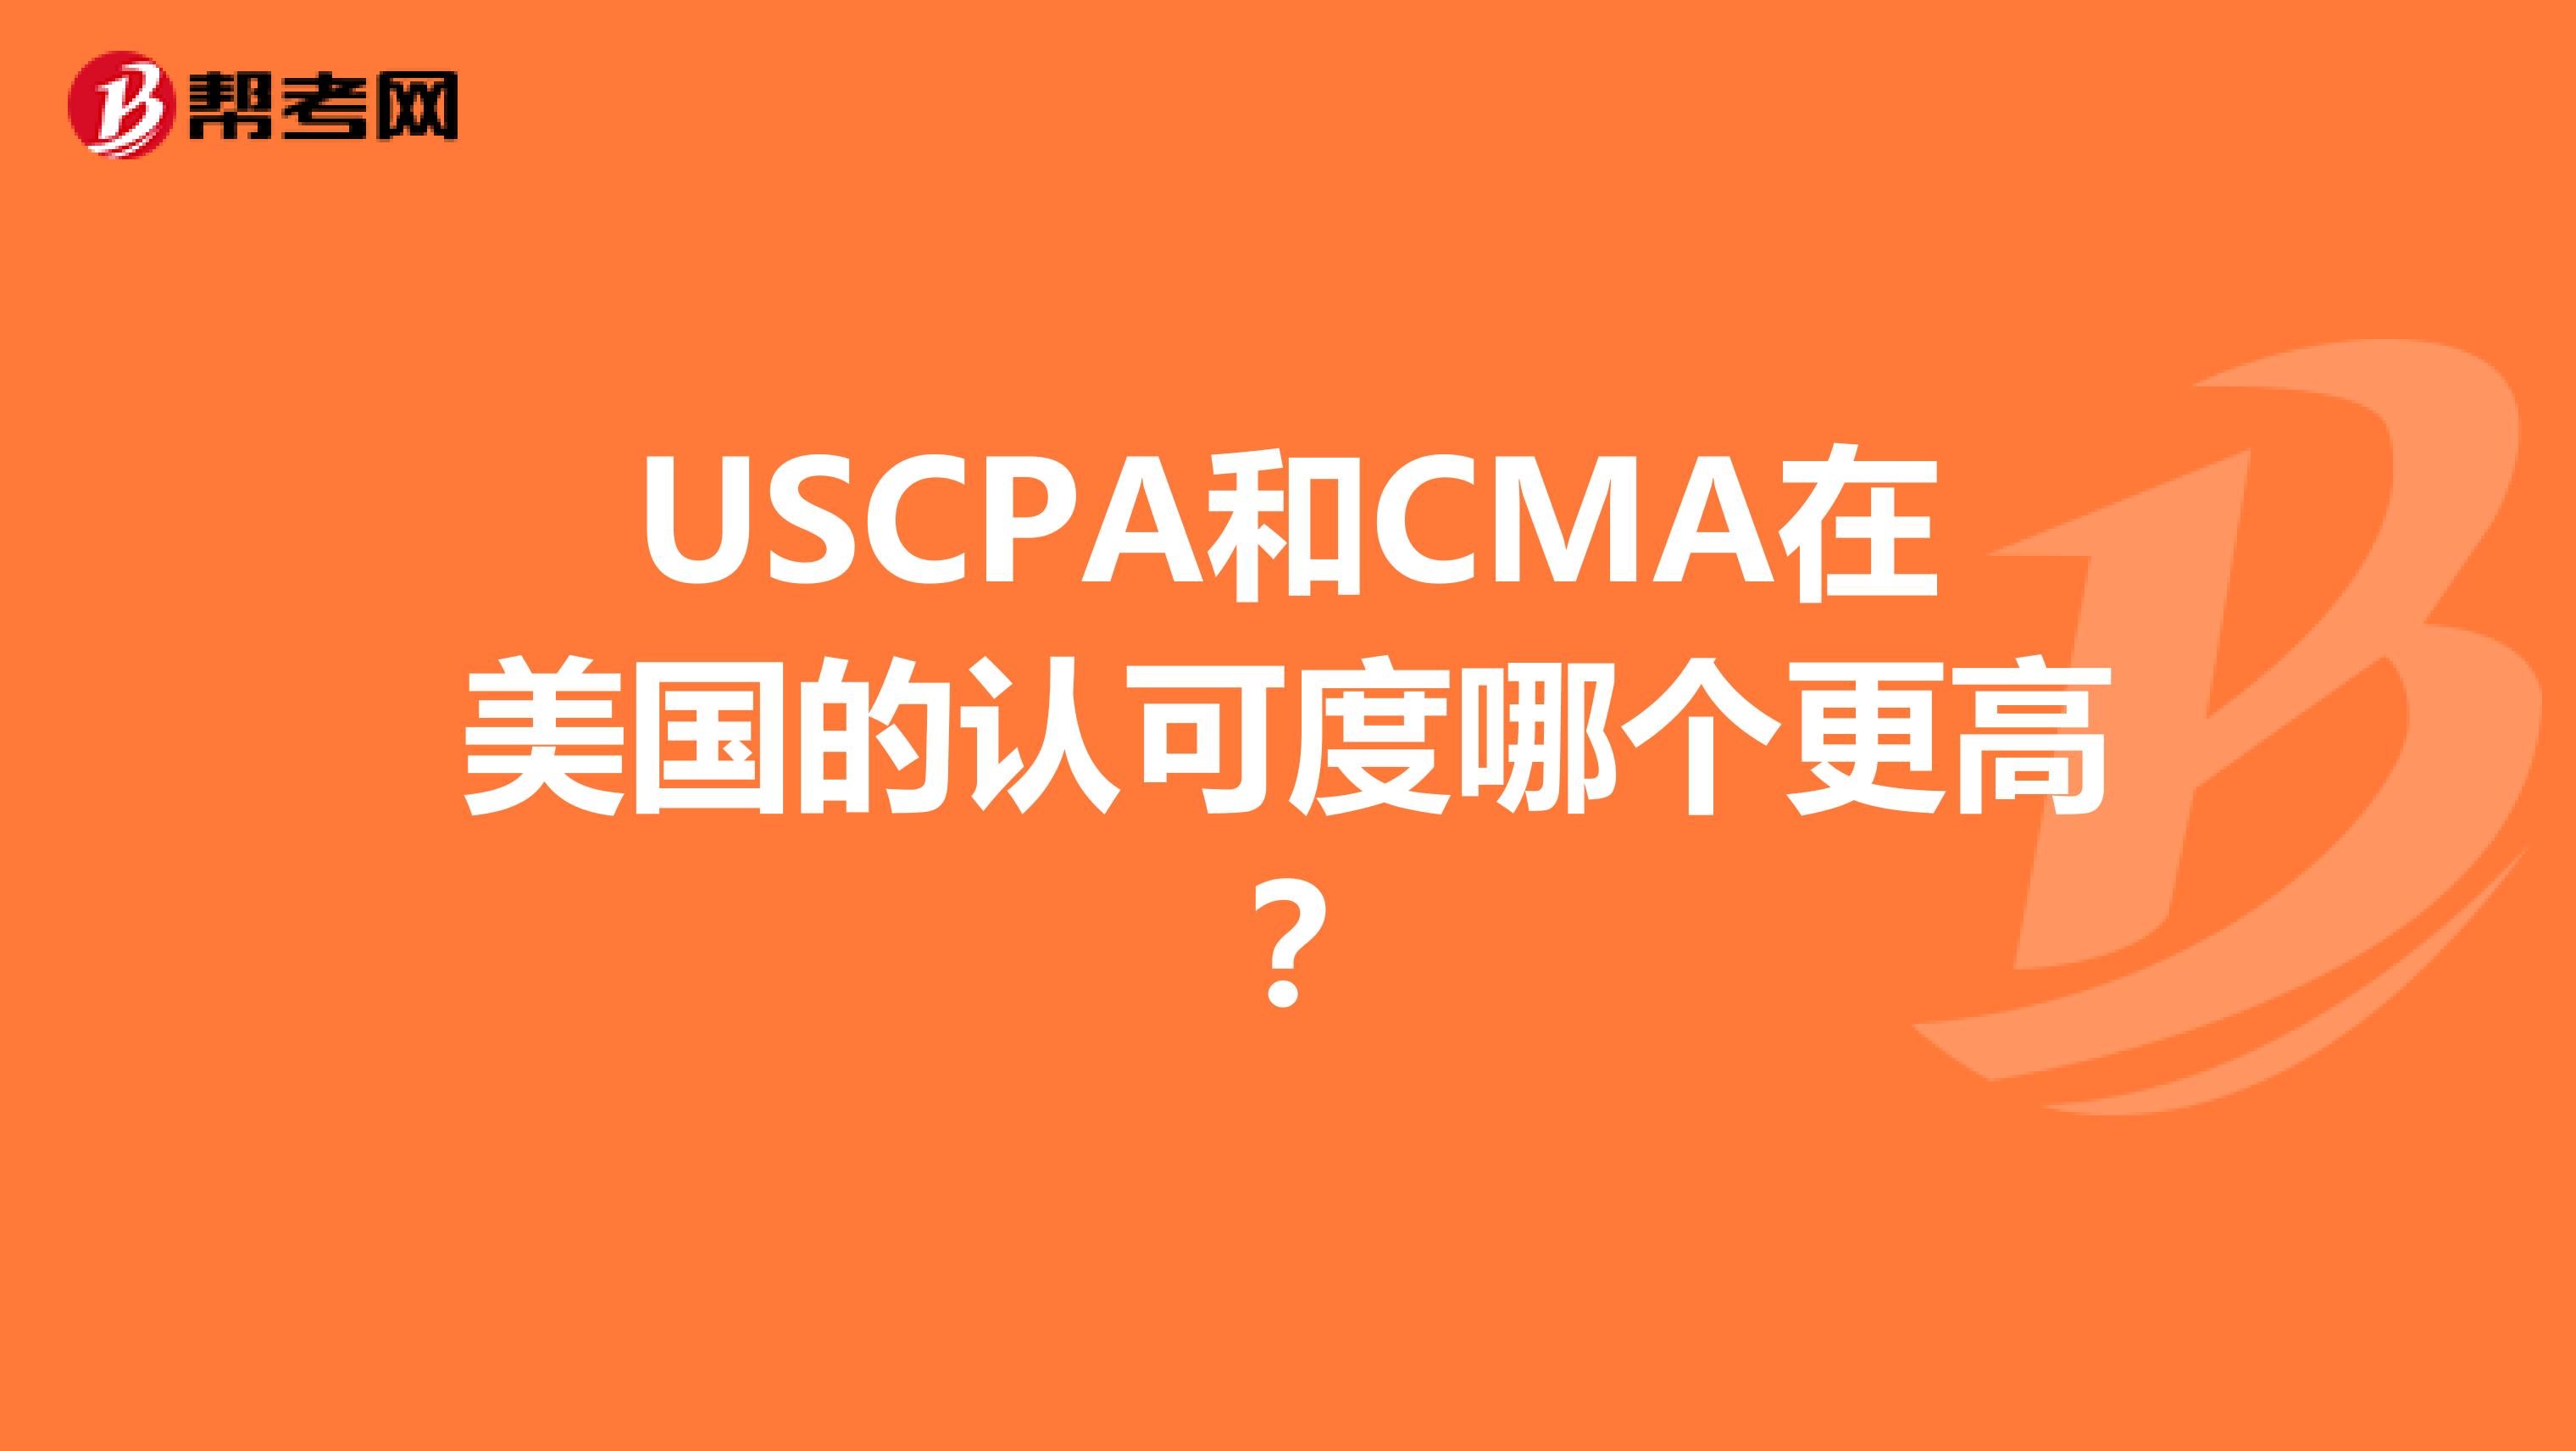 USCPA和CMA在美国的认可度哪个更高？